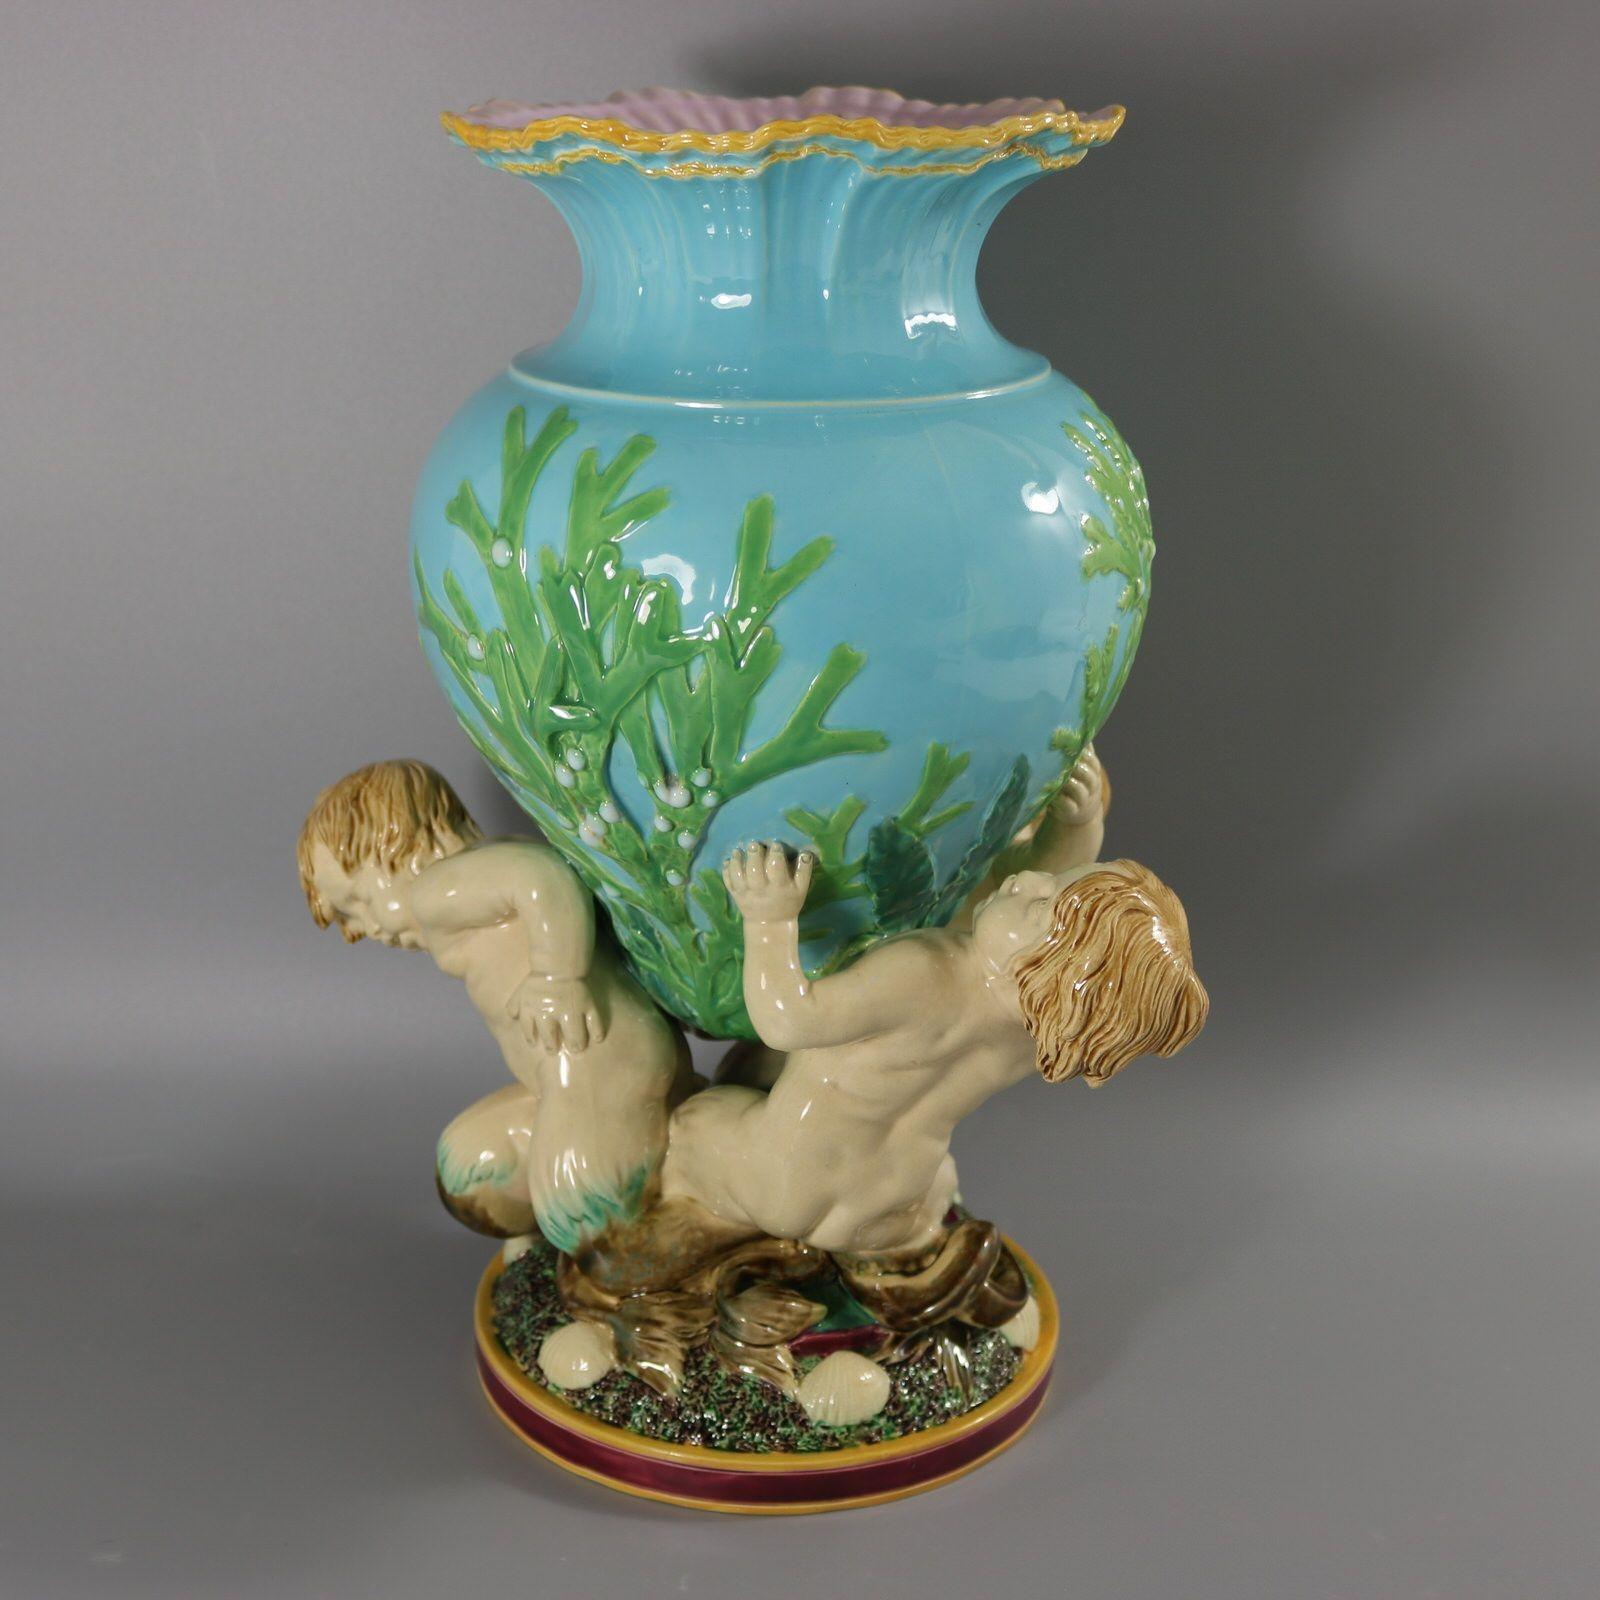 Vase en majolique de Minton qui représente trois merboys soutenant un récipient orné d'algues. Le bord du vase est modelé pour représenter des vagues déferlantes. Version avec fond turquoise. Coloration : turquoise, vert, crème, sont prédominants.